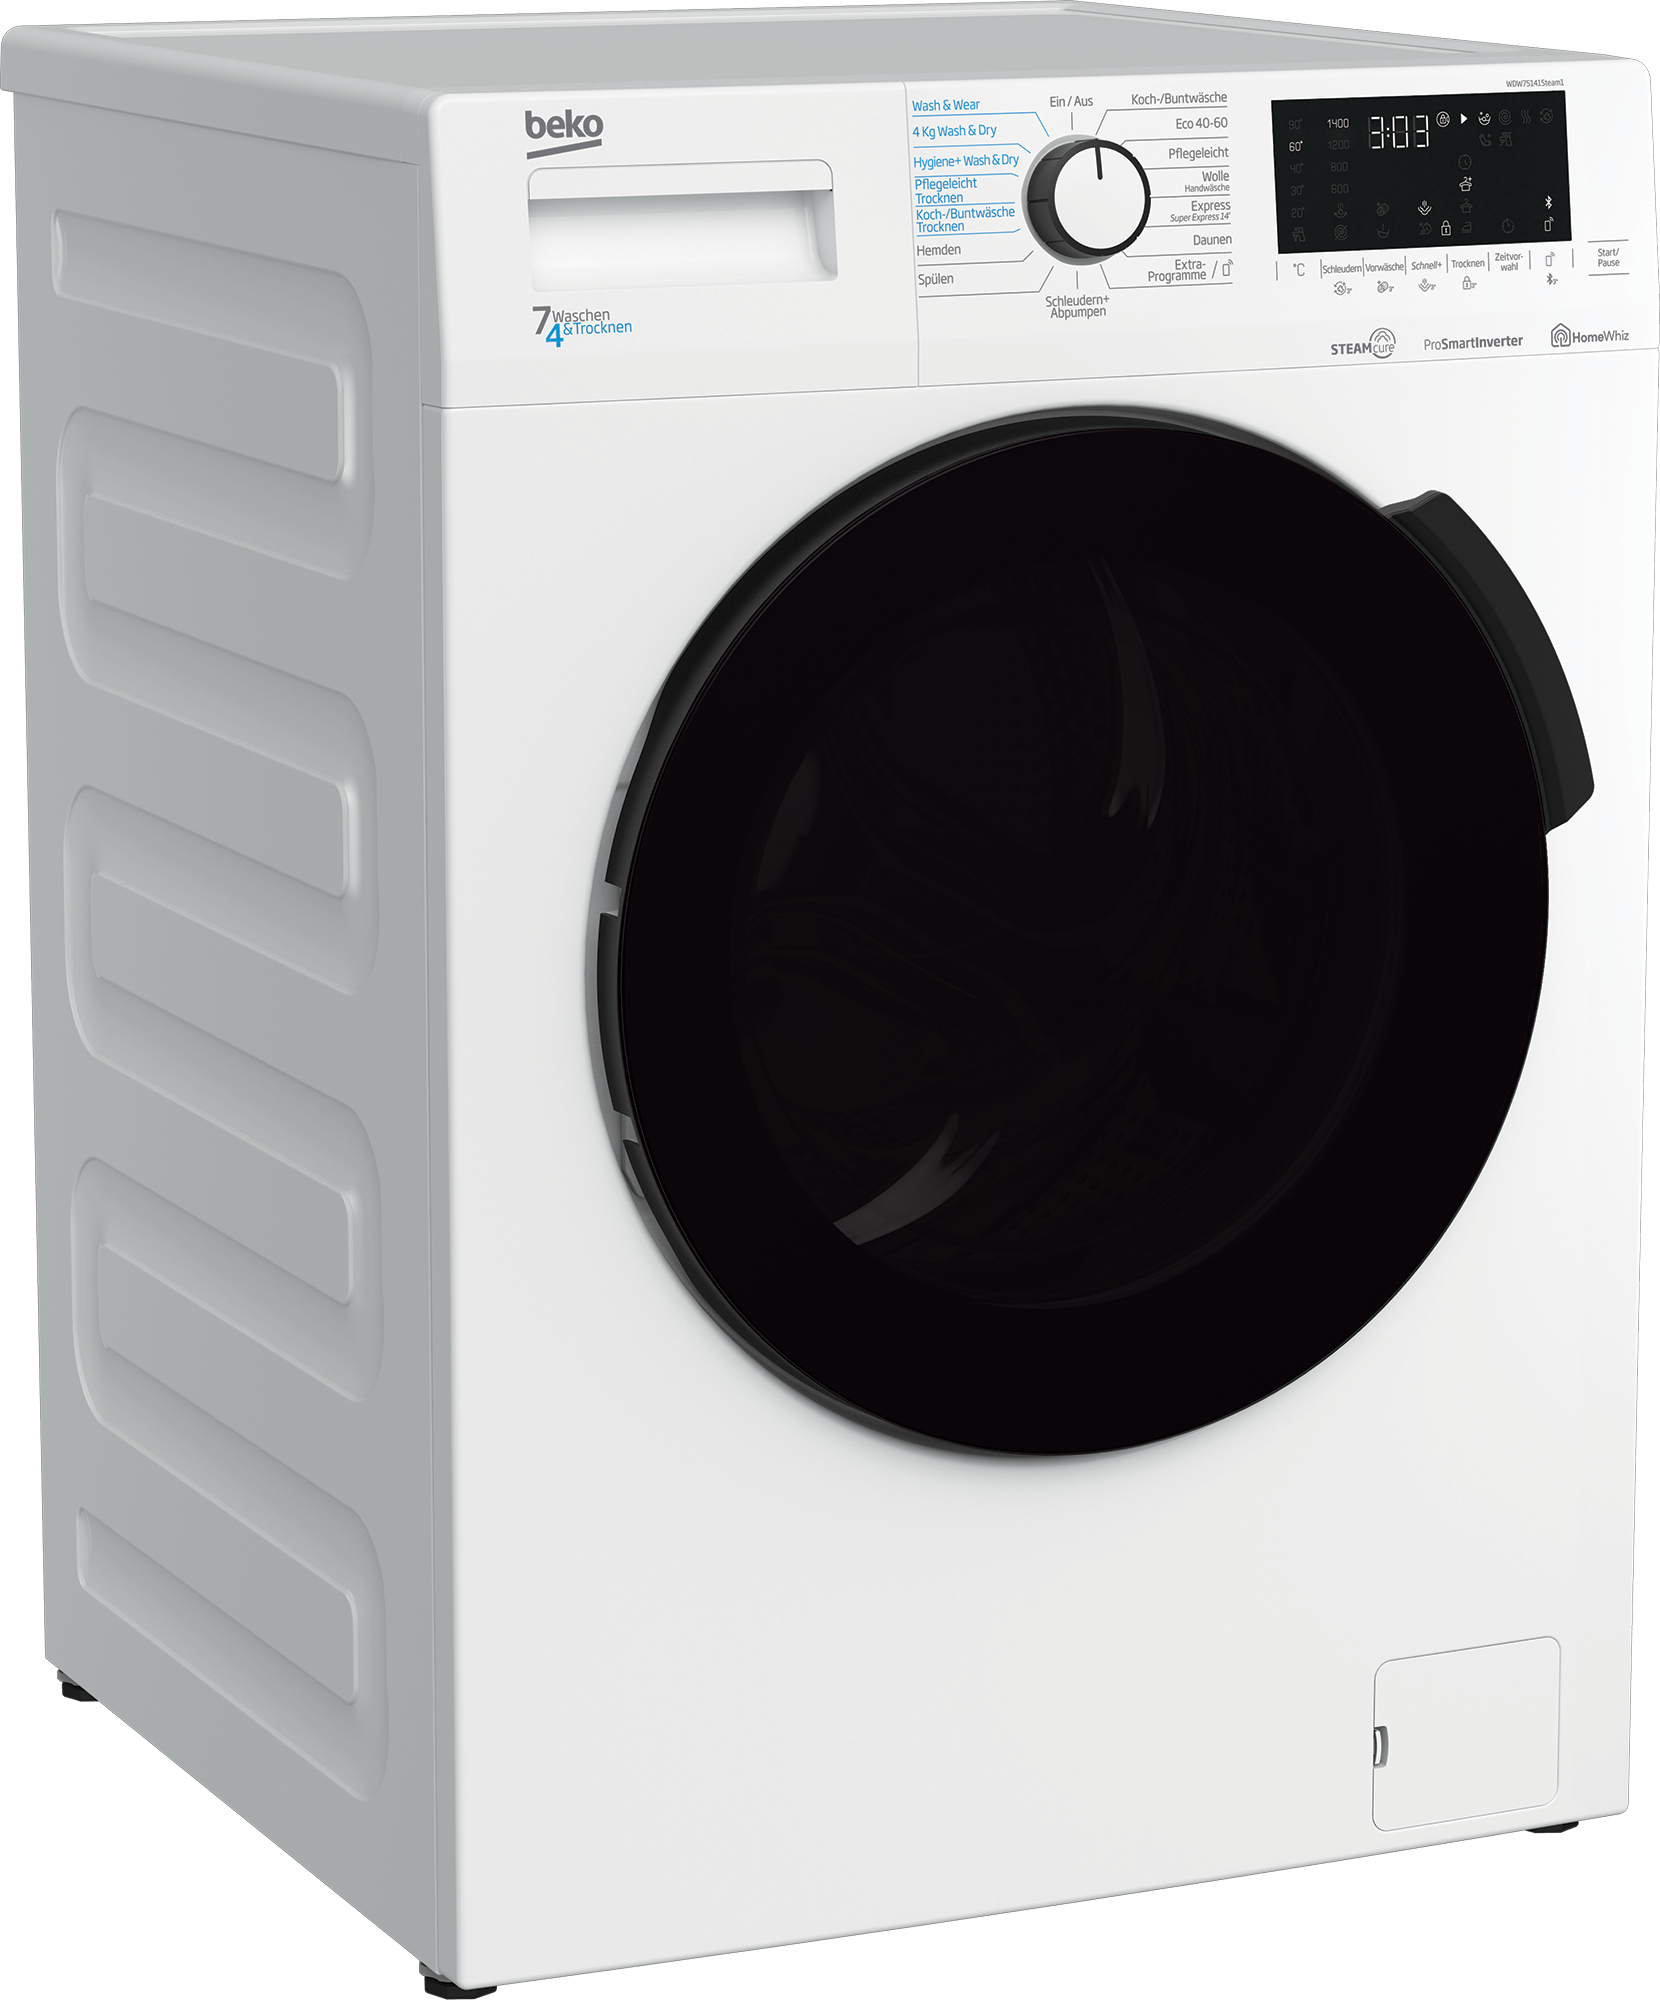 Beko WDW75141Steam1 Waschtrockner/ Wasserkondensation/ Bluetooth/ Dampffunktion/ Nachlegefunktion/ Watersafe/ 7 kg Waschen, 4 kg Trocknen